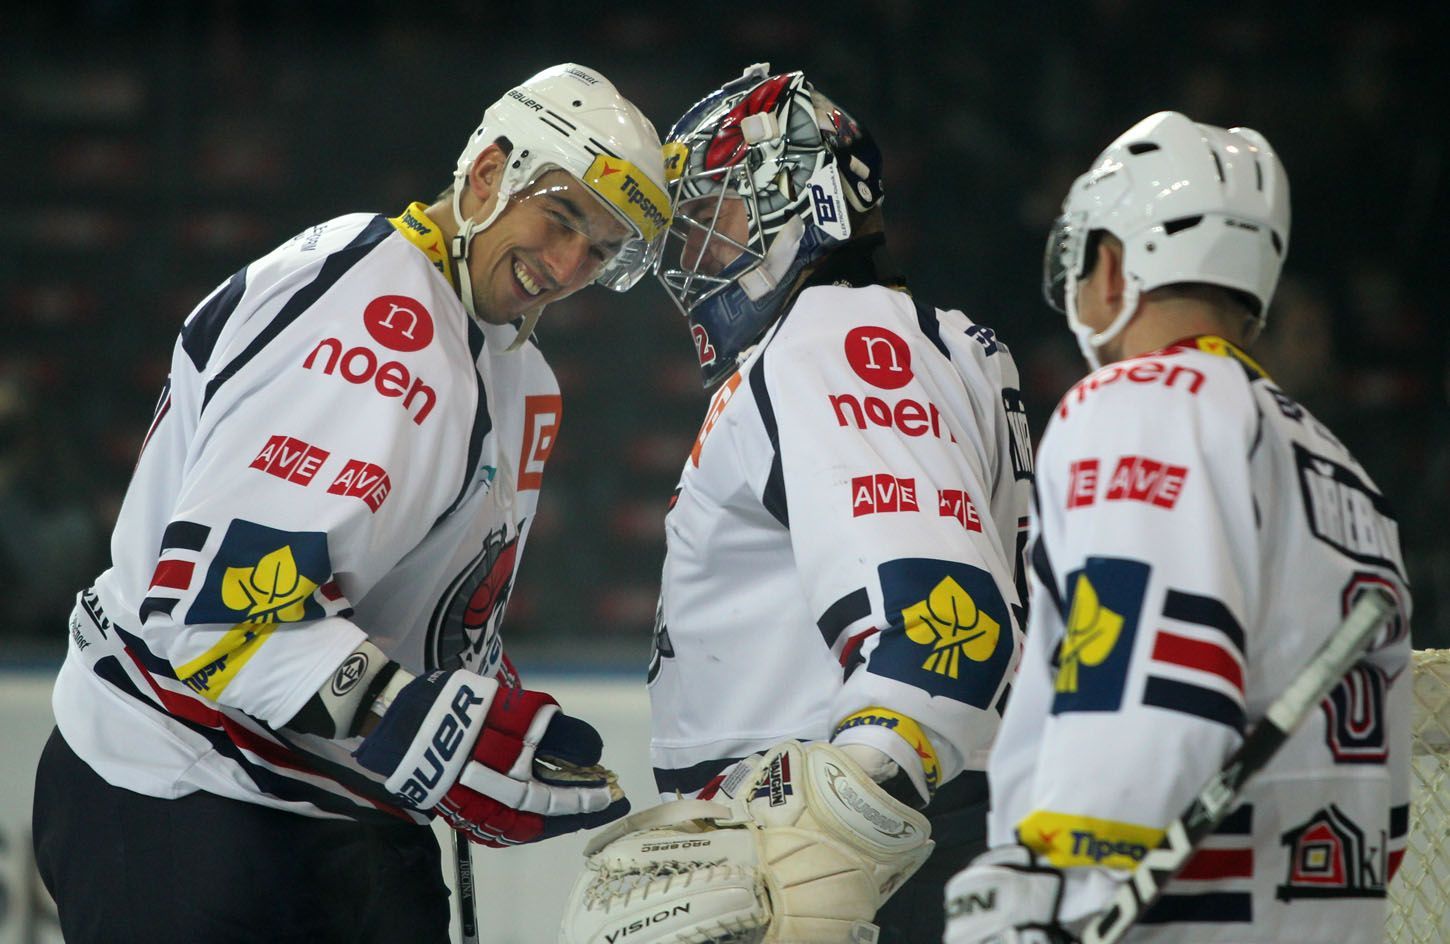 Hokejisté Chomutova Štěpán Hřebejk (vpravo) a brankář Milan Řehoř před utkáním 16. kola Tipsport extraligy 2012/13 proti Spartě Praha.